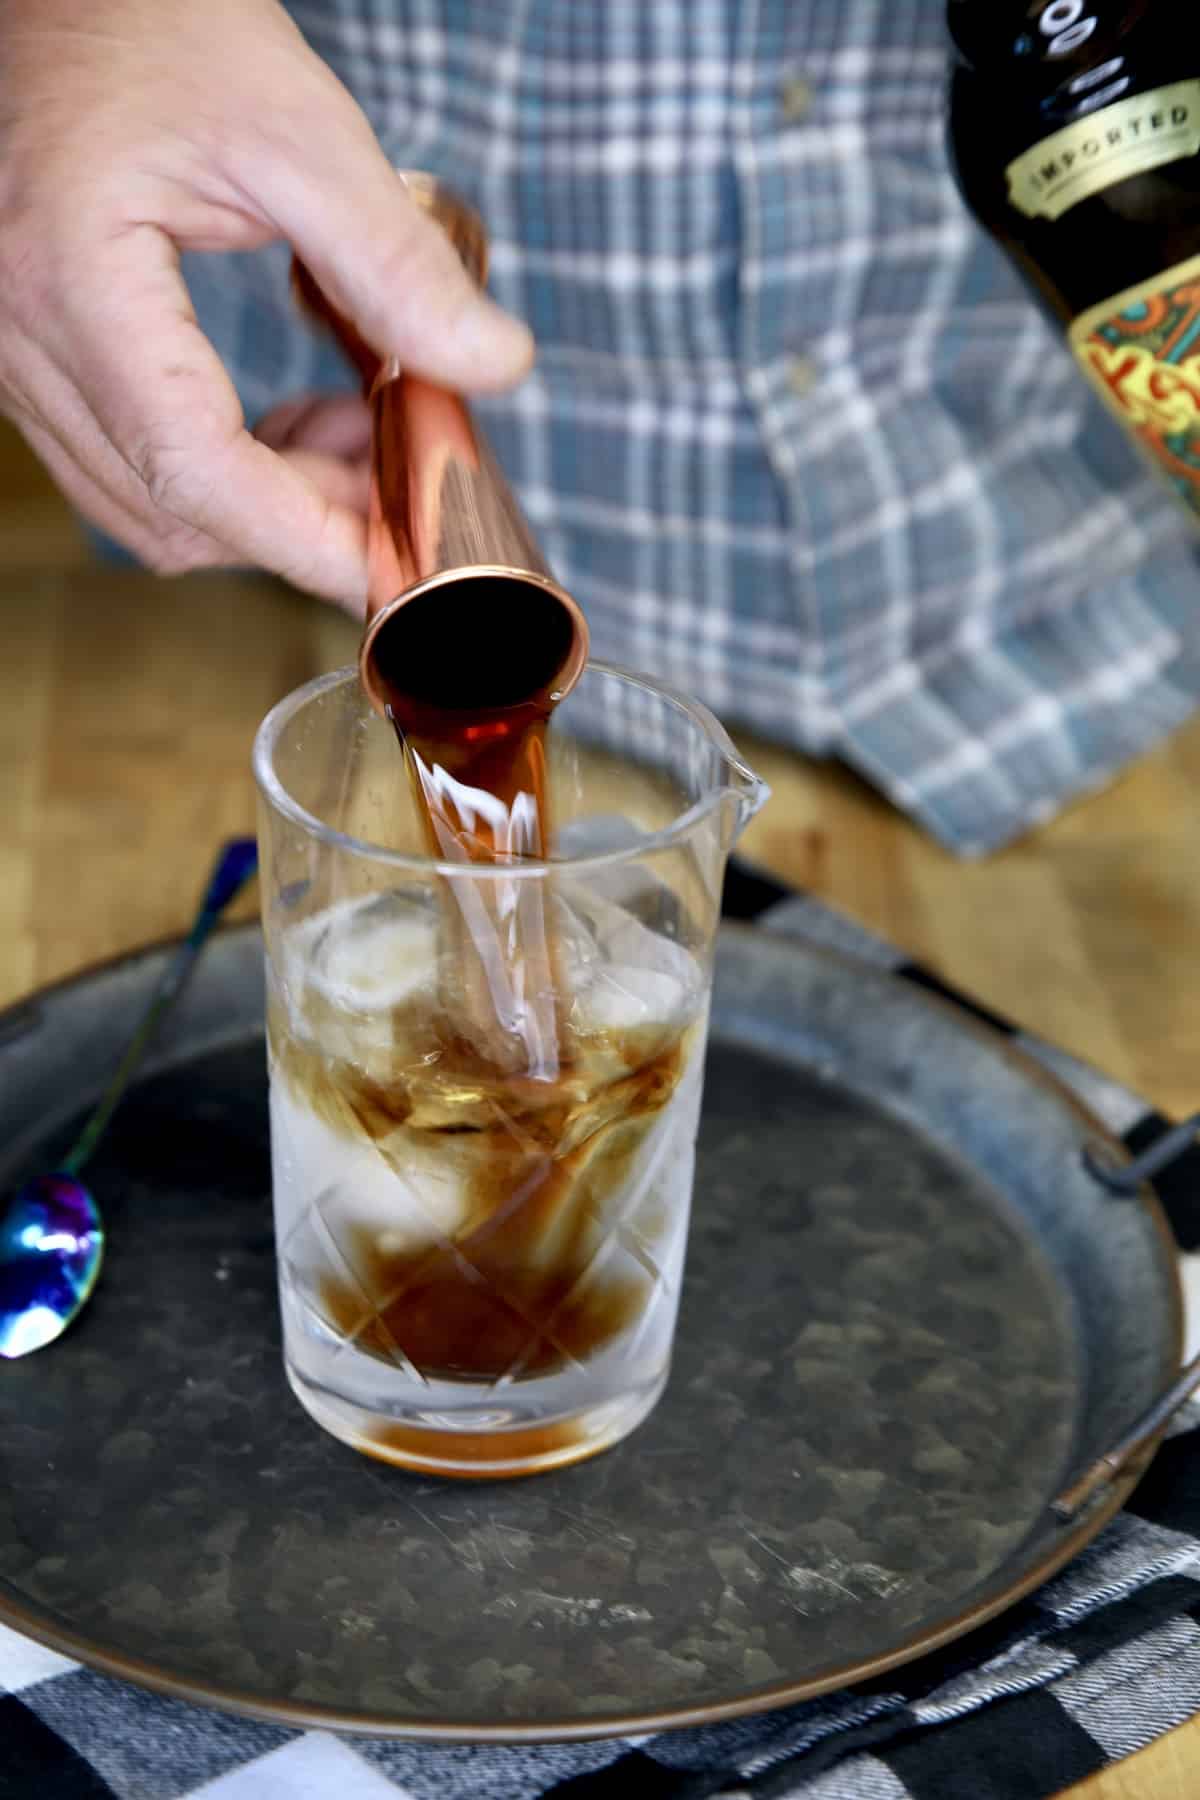 Pouring Kahlua into a cocktail mixer.